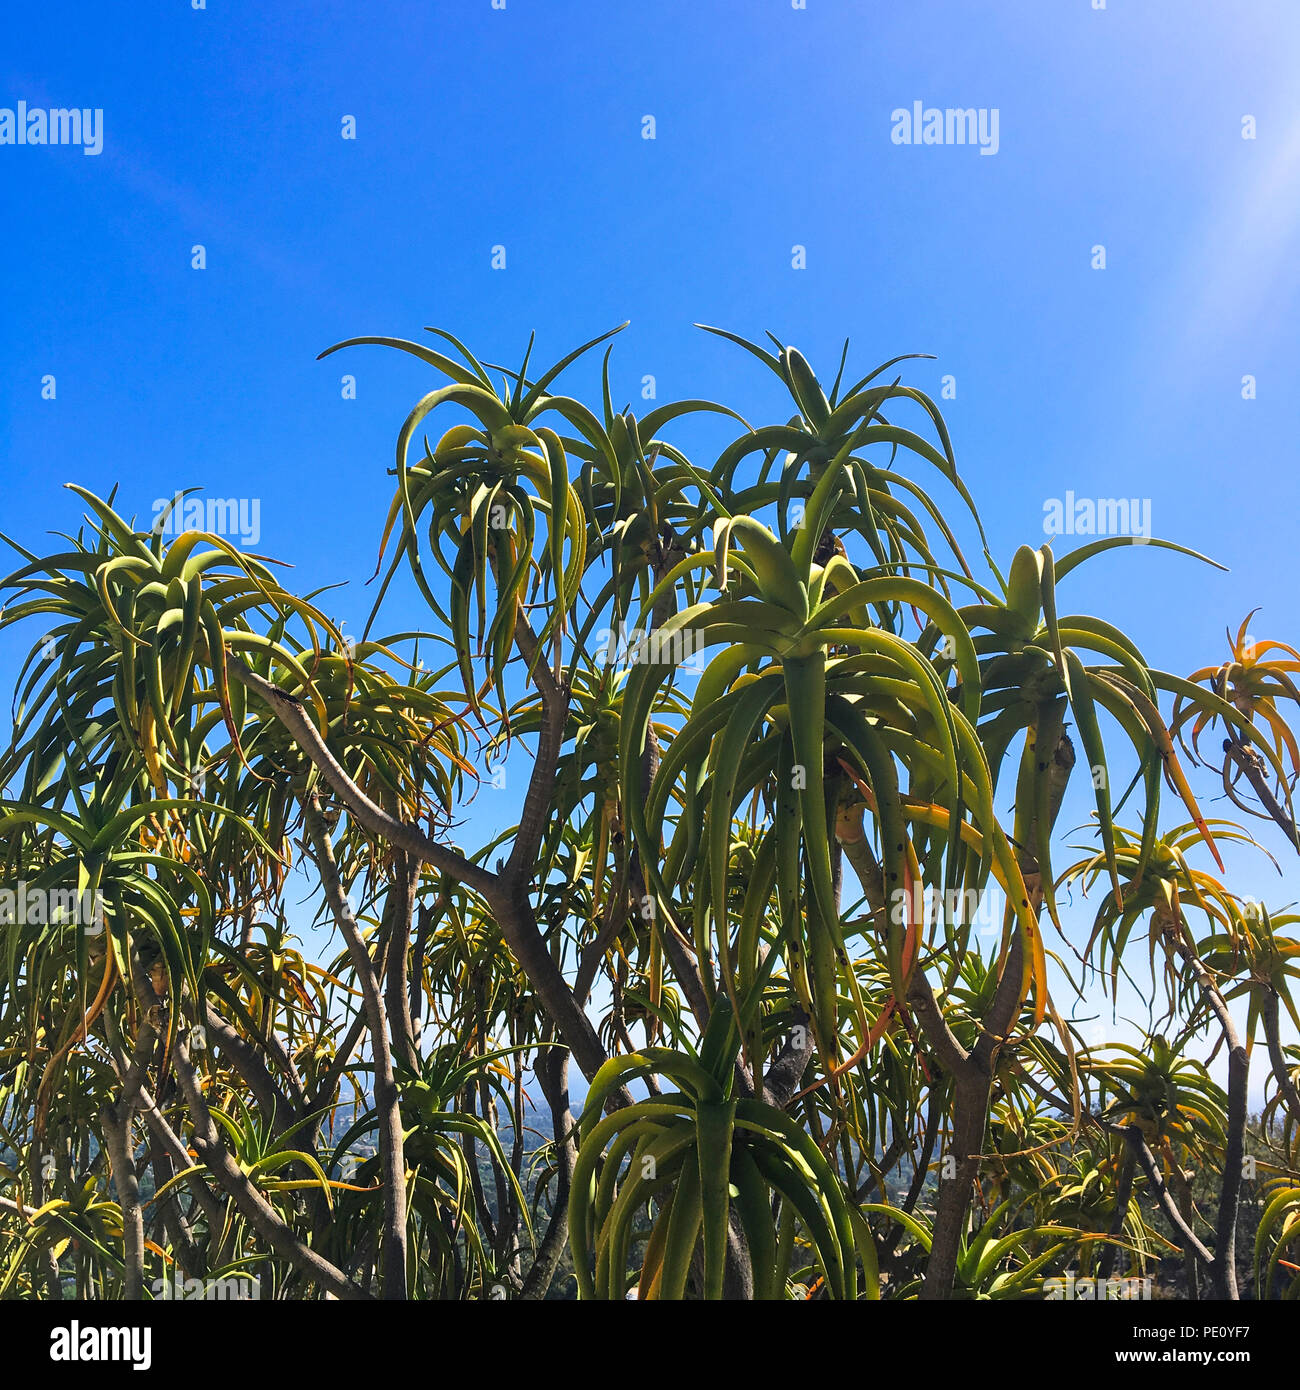 Tree Aloe, Aloe bainesii tree succulents, cacti succulent garden over a clear blue sky. Stock Photo